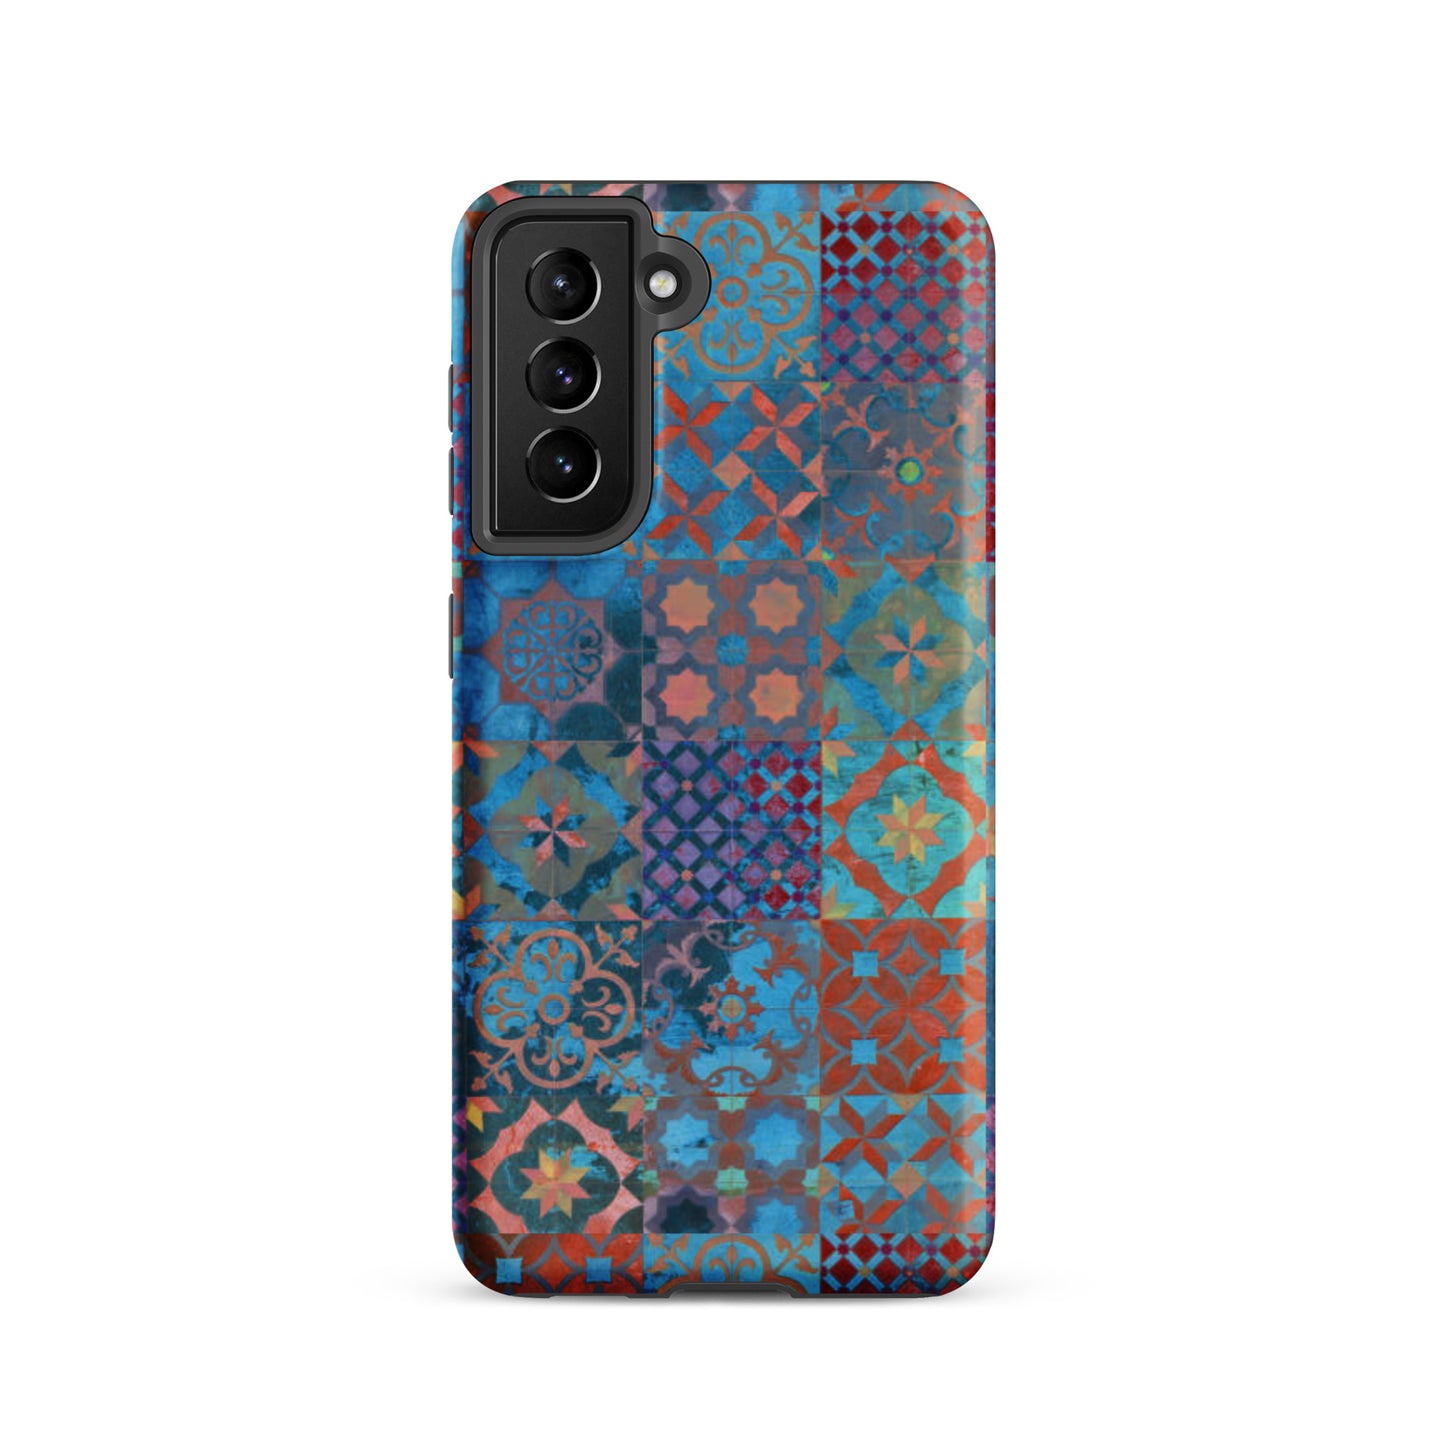 Moroccan Tile Tough Samsung® Case